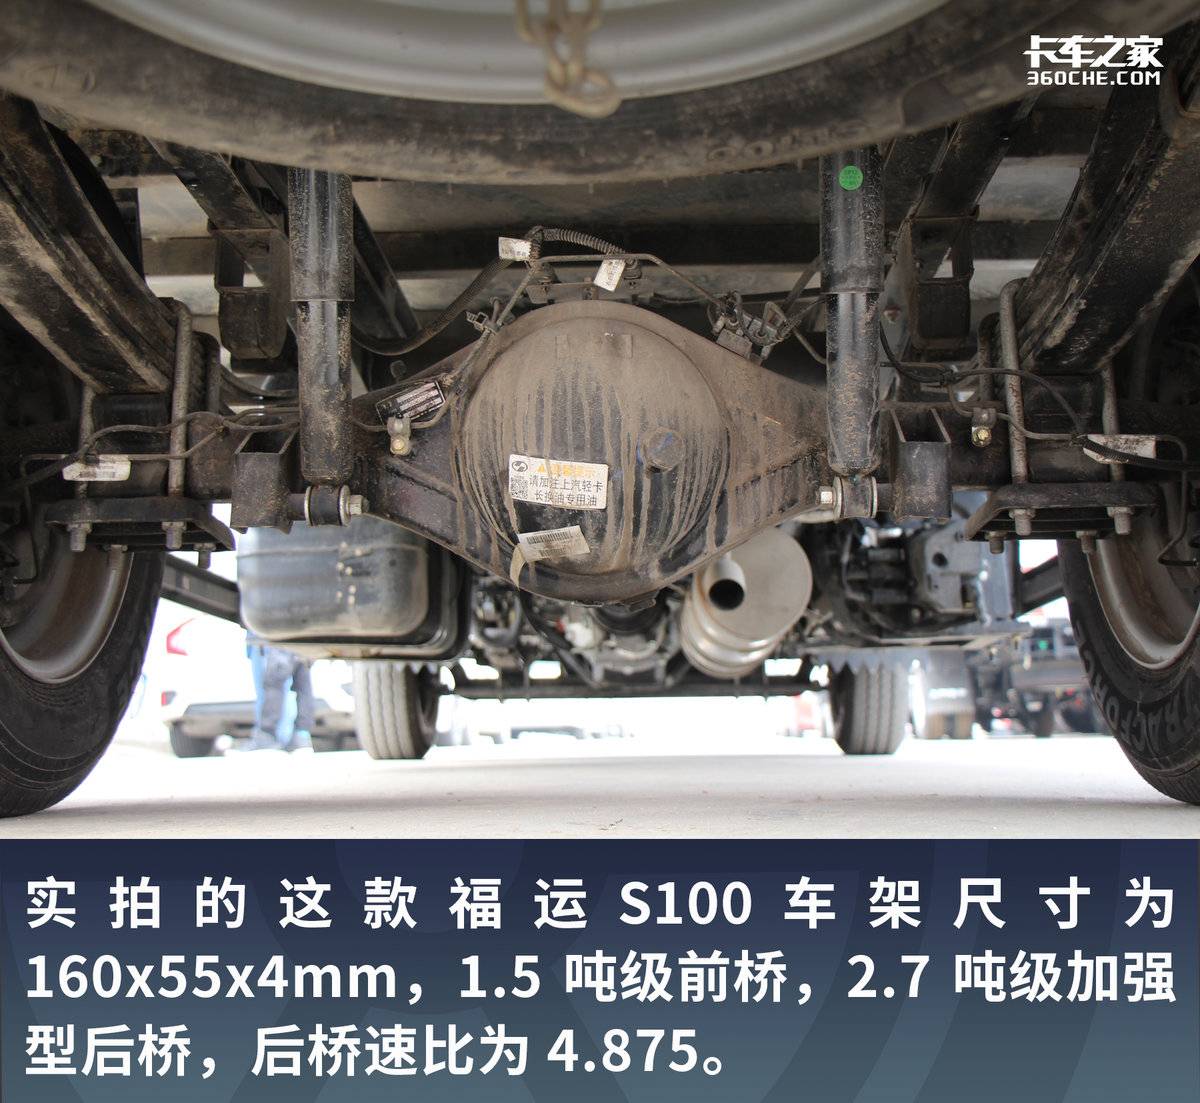 货箱长度4.17米合规装1.8吨 堪比标载轻卡 上汽轻卡S100报价7.11万